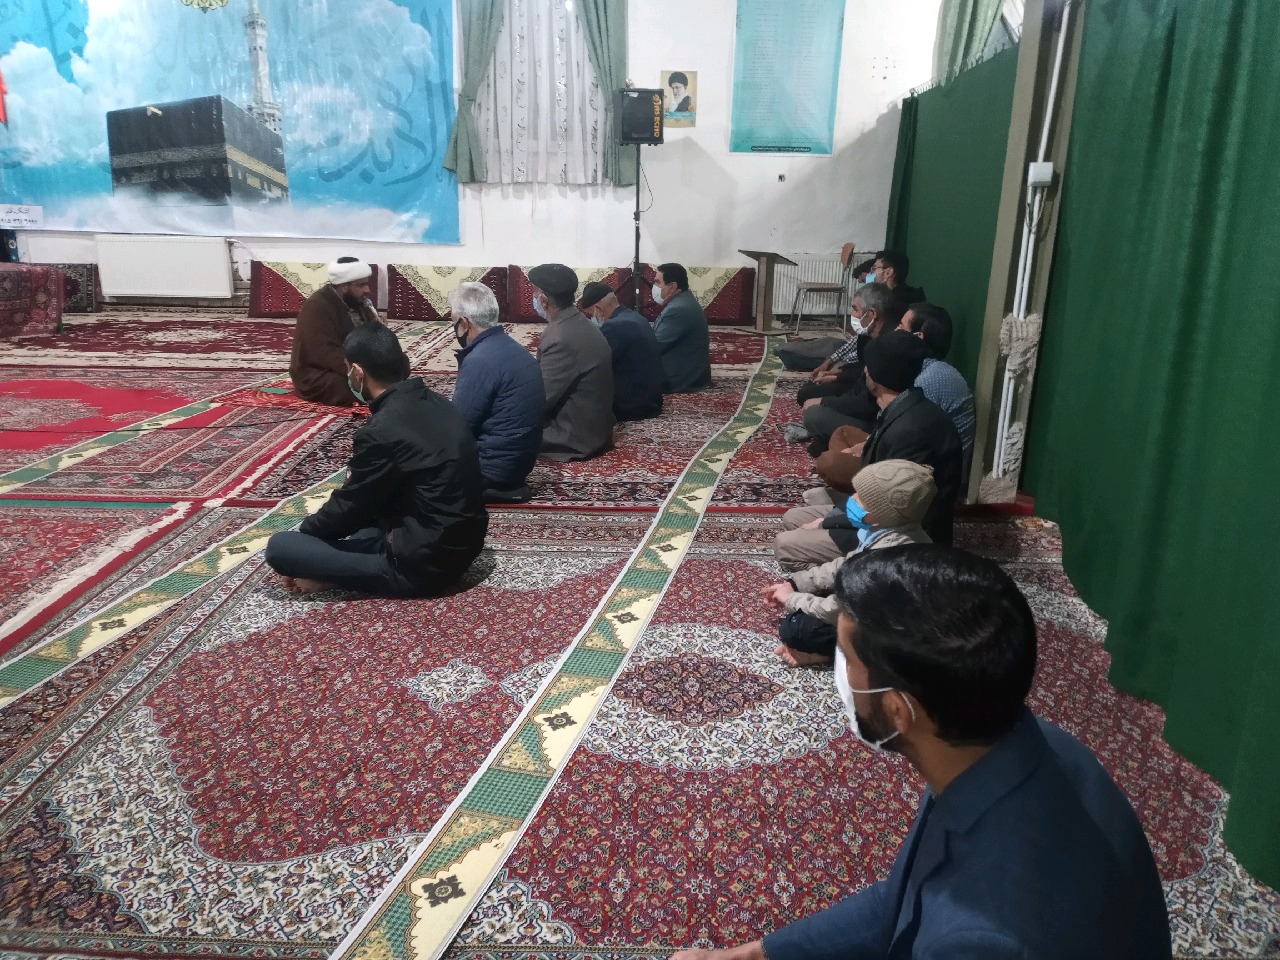 برگزاری کلاس اشنایی با نهج البلاغه در فضای صمیمی در مسجد در ایام کرونا